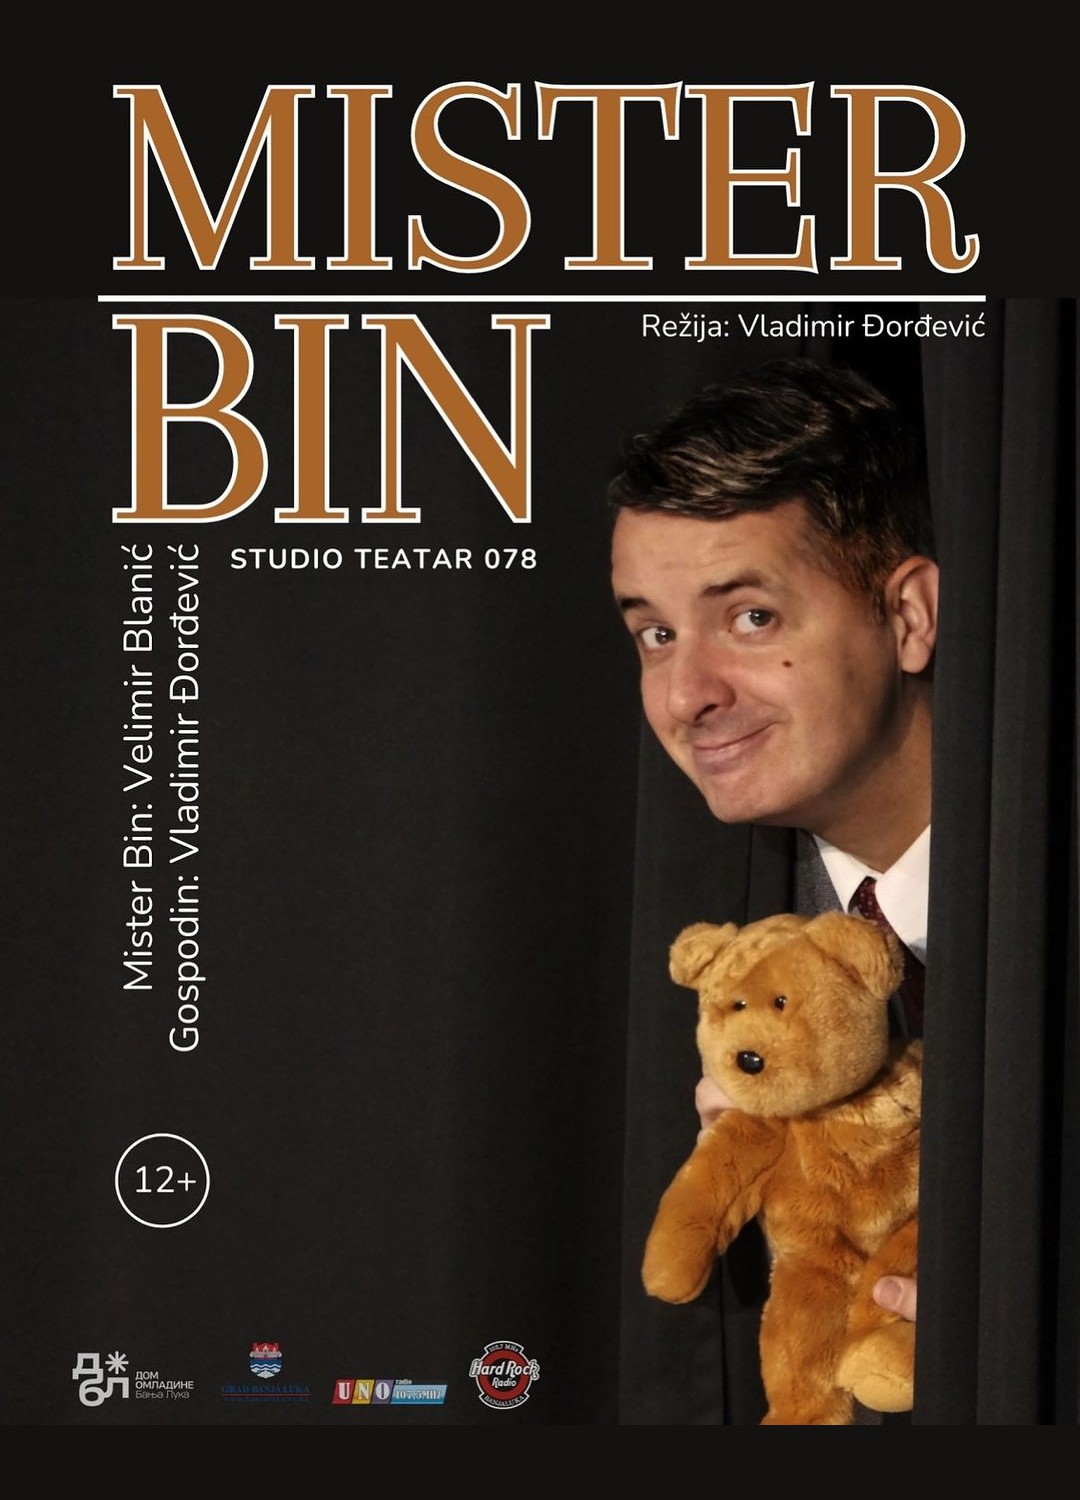 Mister Bin Studio teatar 078